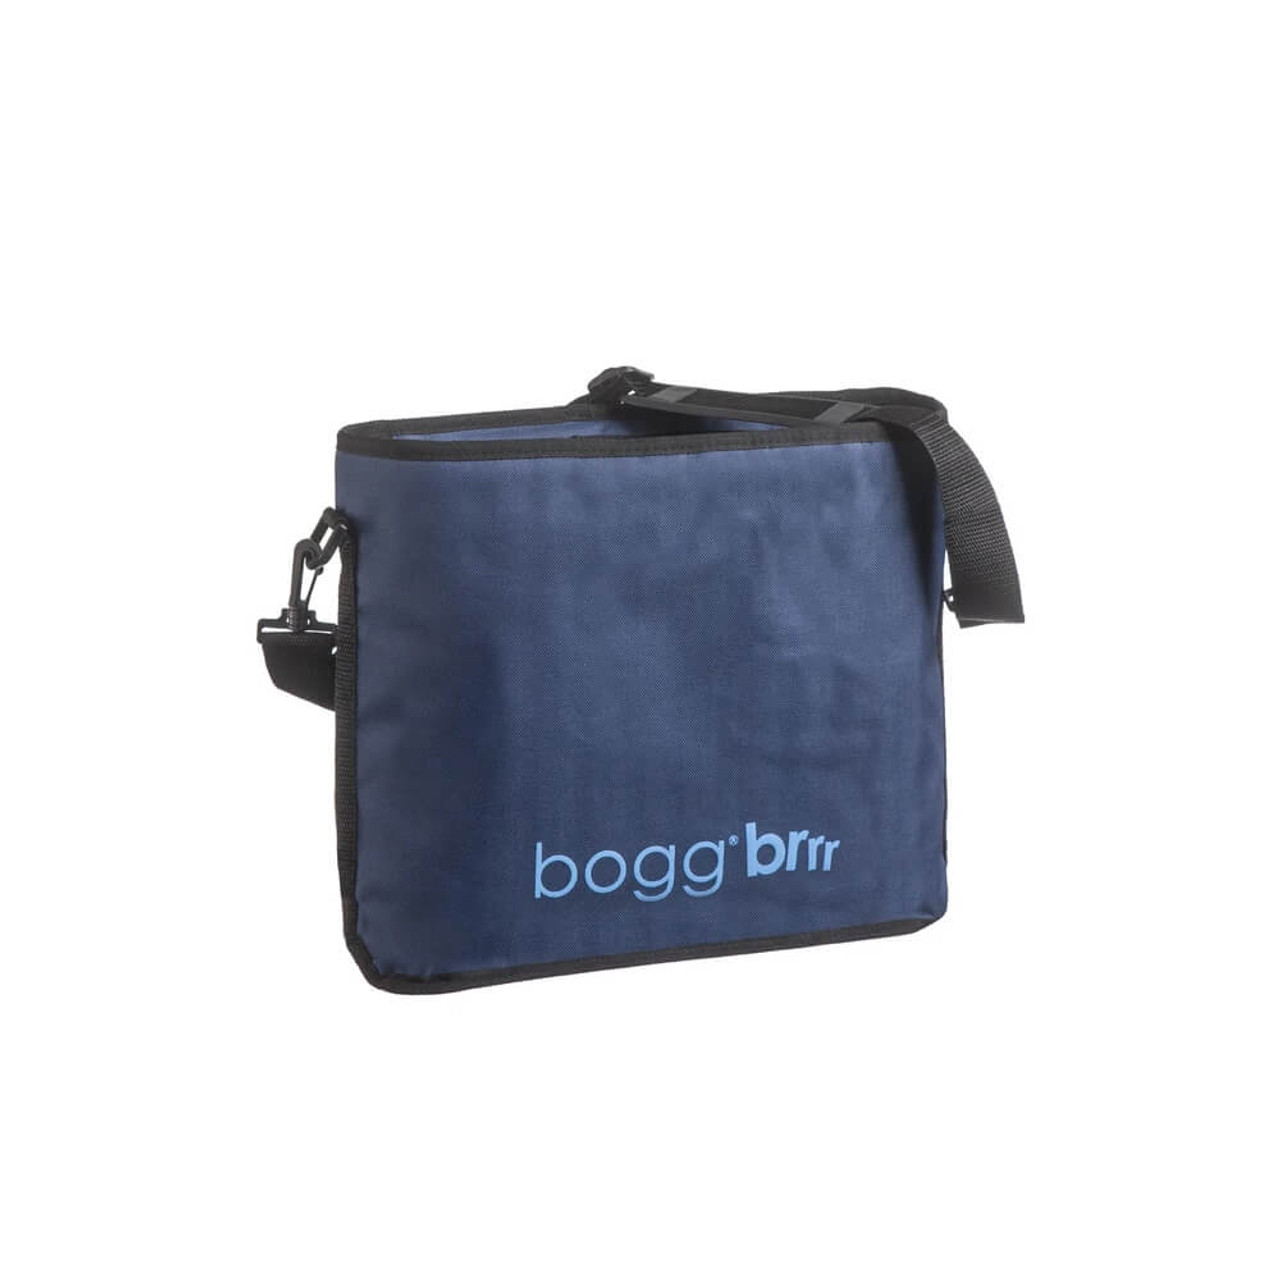 Bogg Bag Bitty Bag - Alabama Outdoors